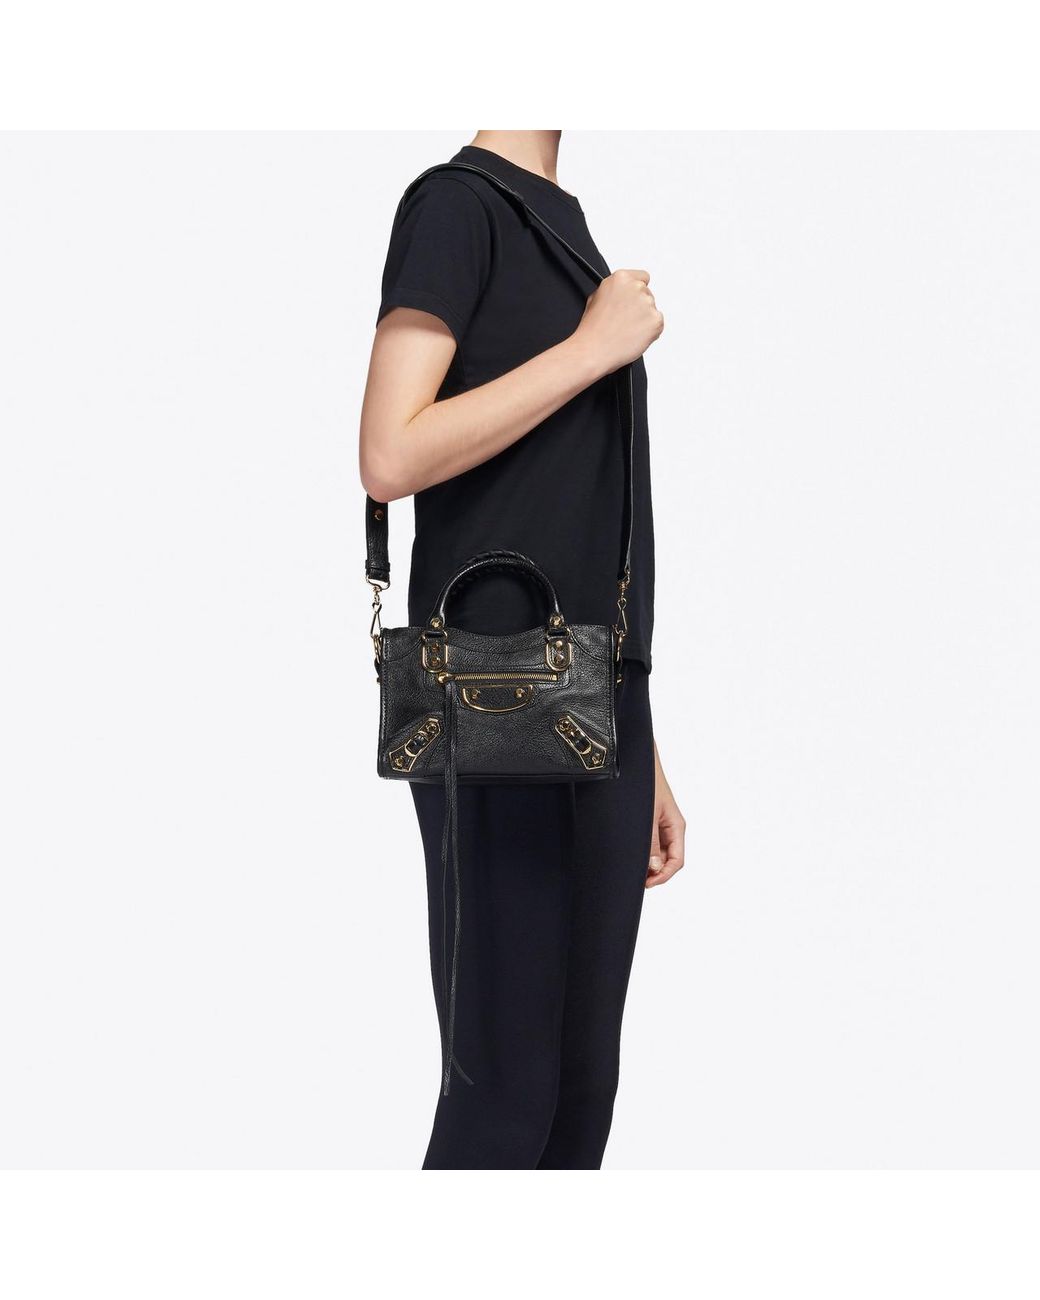 Balenciaga Metallic Edge Mini Bag in Black | Lyst